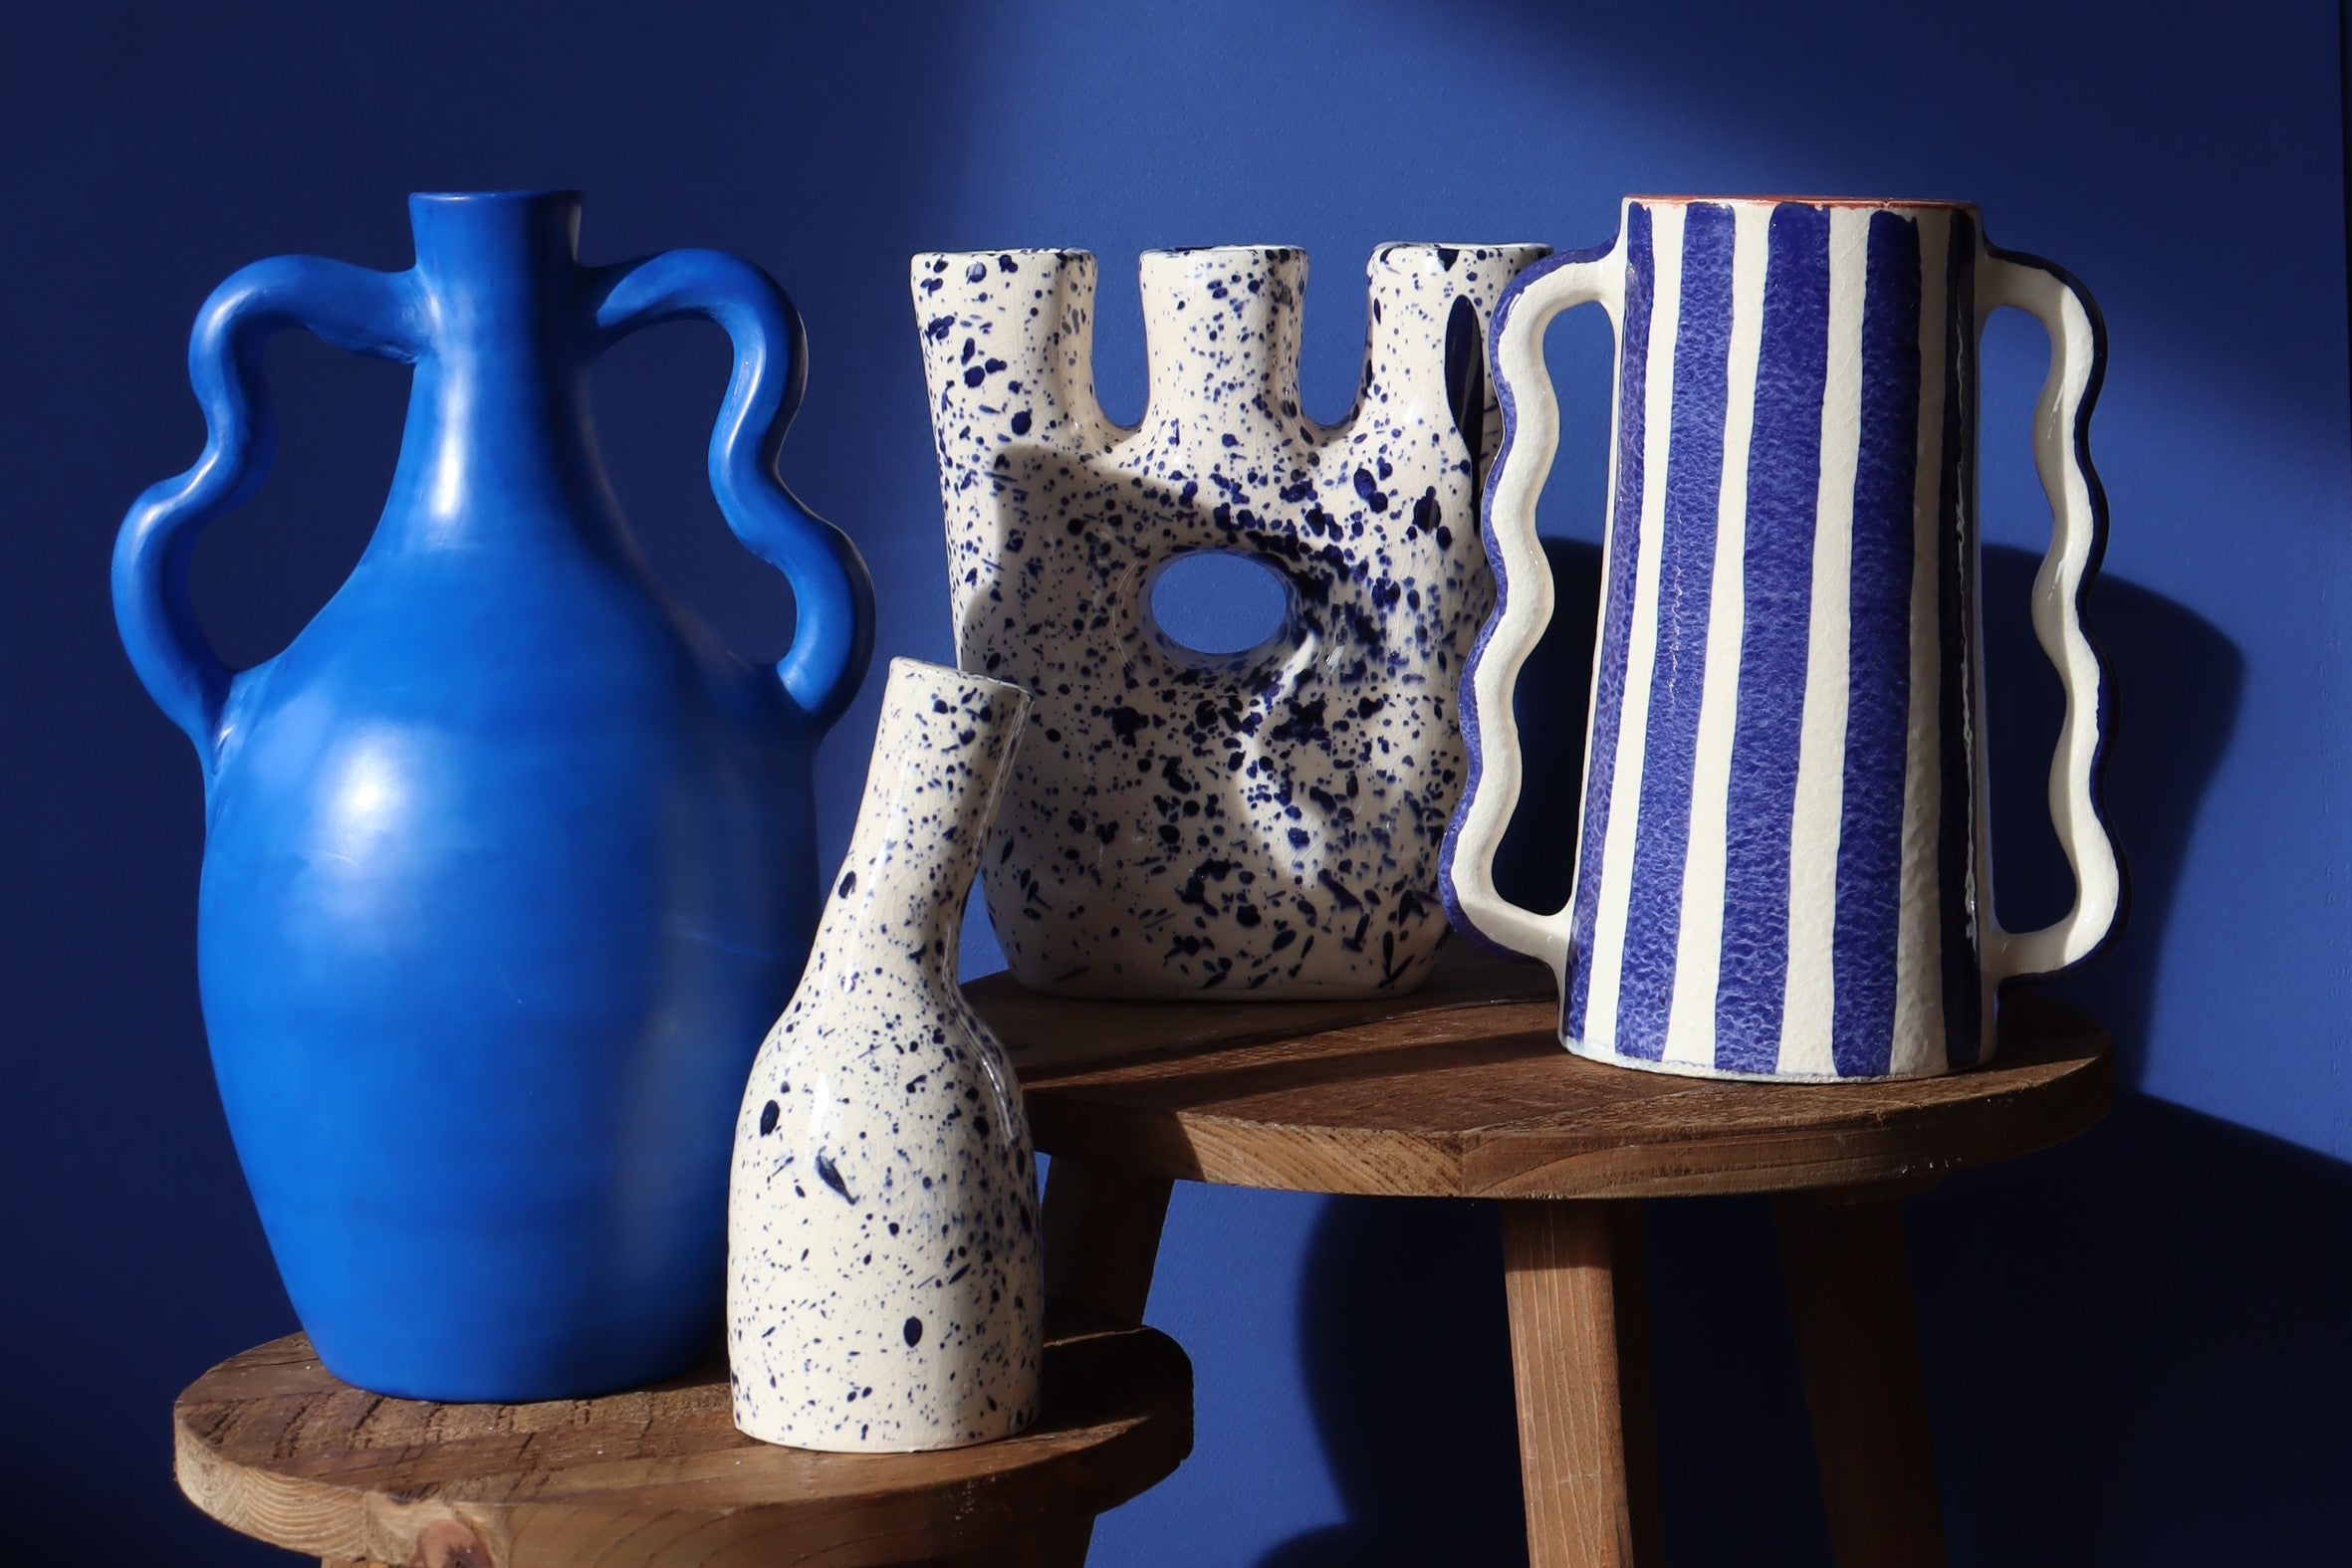 Collection de vases artisanaux fait main - bleus et mouchetés